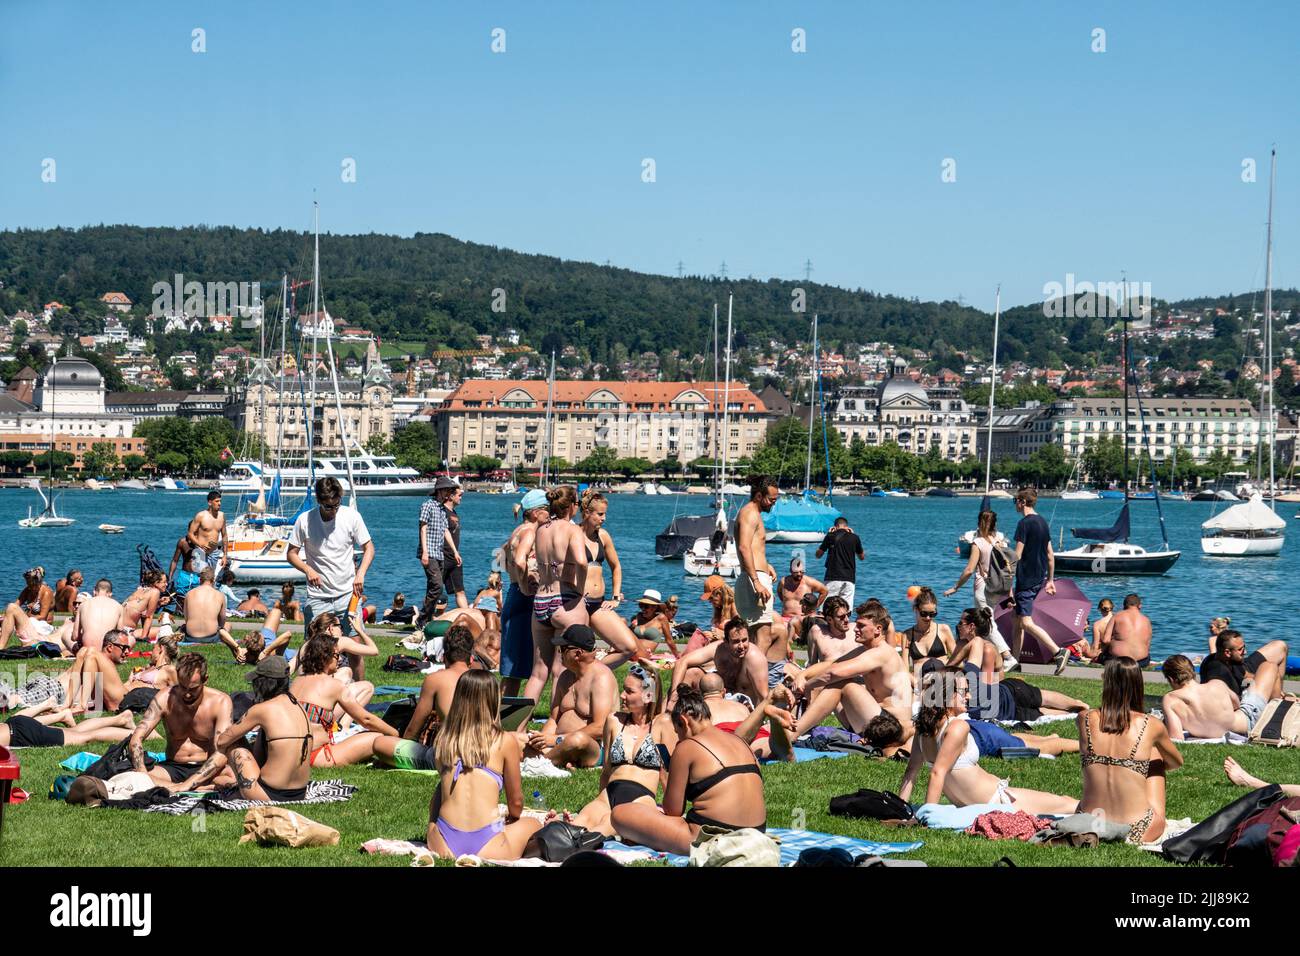 Liegewiese am See in Zürich, Rentenwiese, Sommer, Schweiz Stock Photo